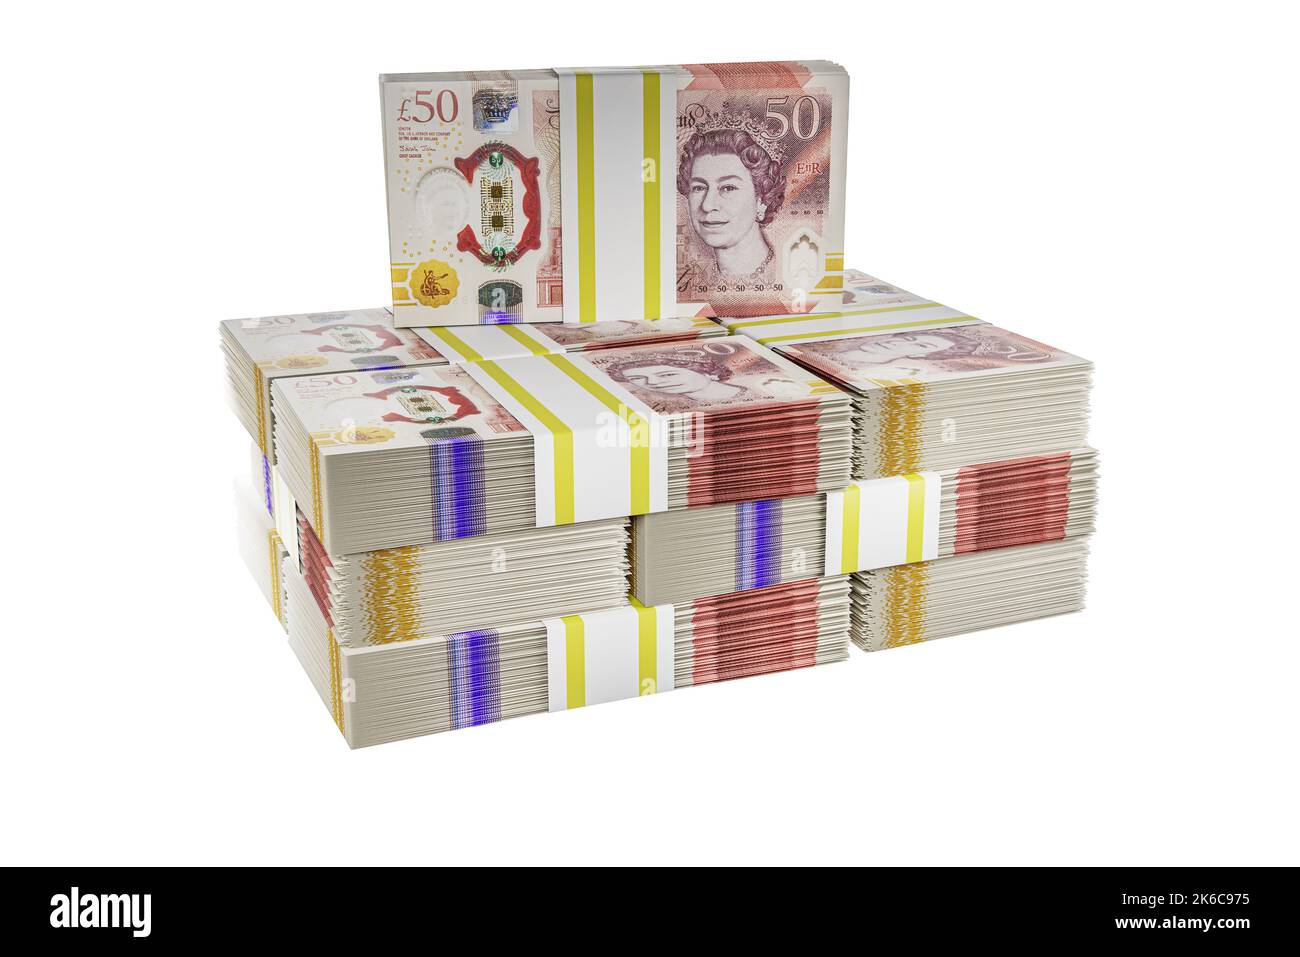 Piles de piles de la pile de monnaie britannique piles de £50 billets en polymère britannique liasse de cinquante livres de billets Banque D'Images